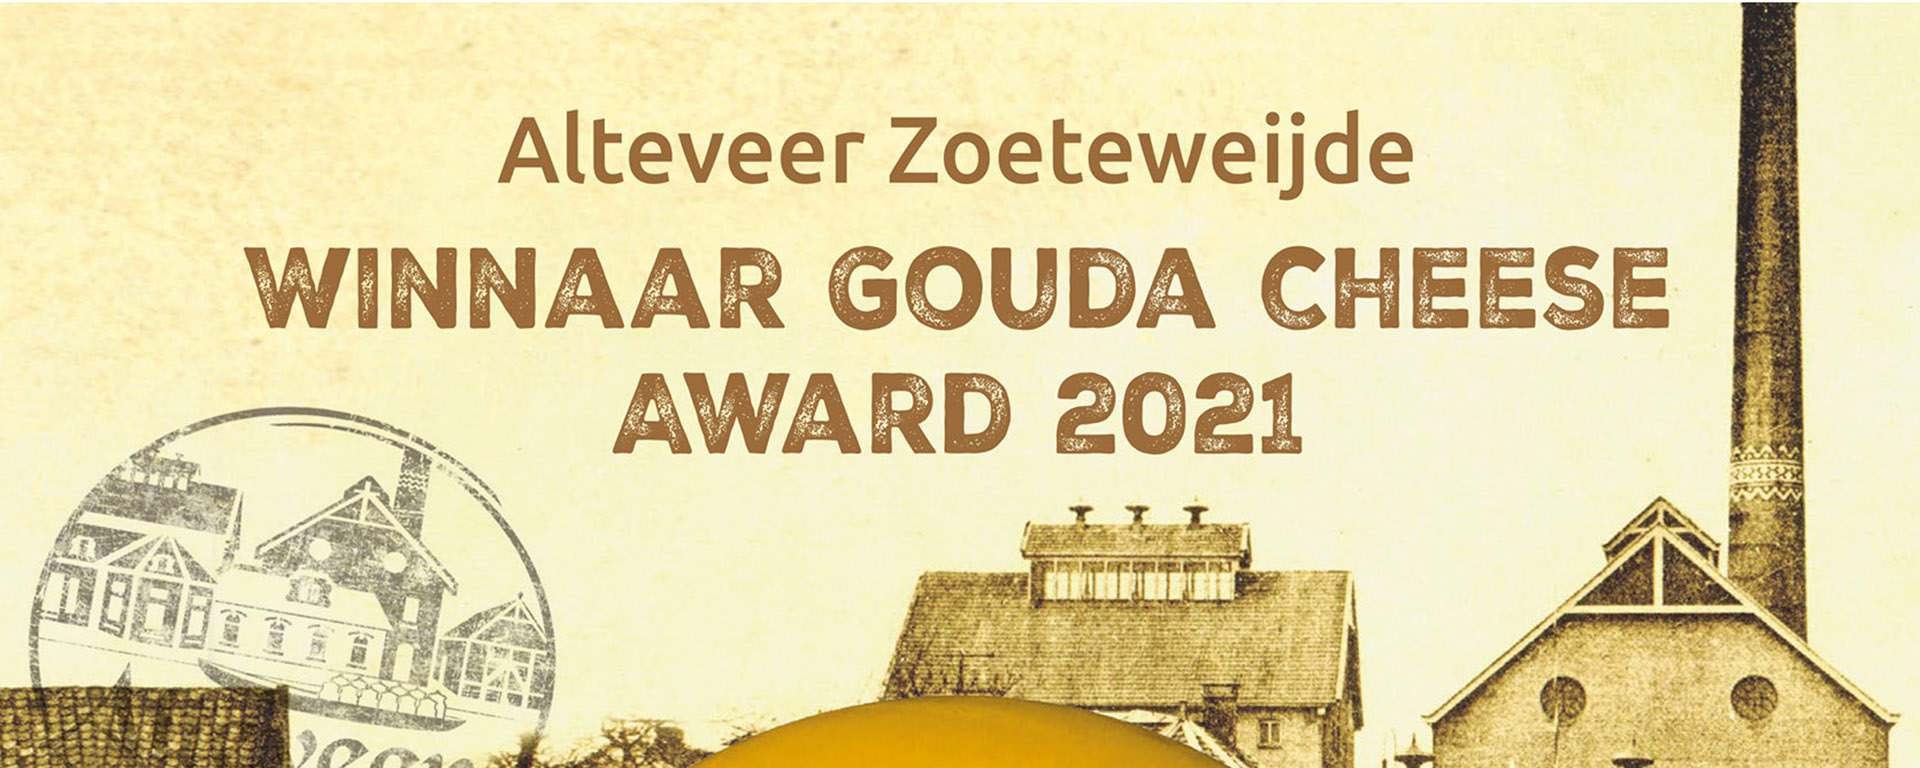 Käsekompetenz die sich auszahlt: Uniekaas Holland B.V. gewinnt begehrten Gouda-Käsepreis